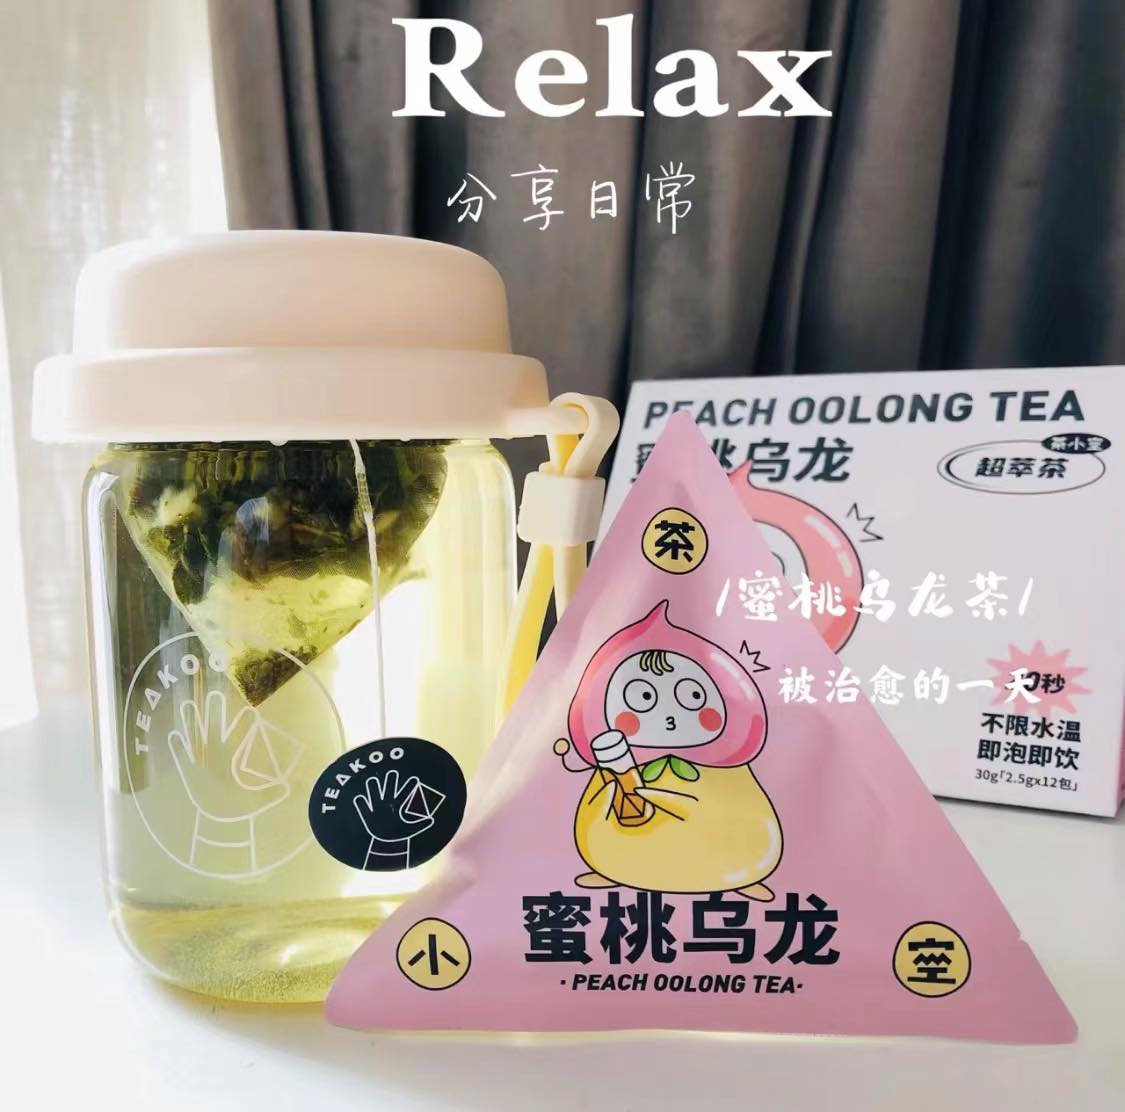 Teakoo Tea Cup